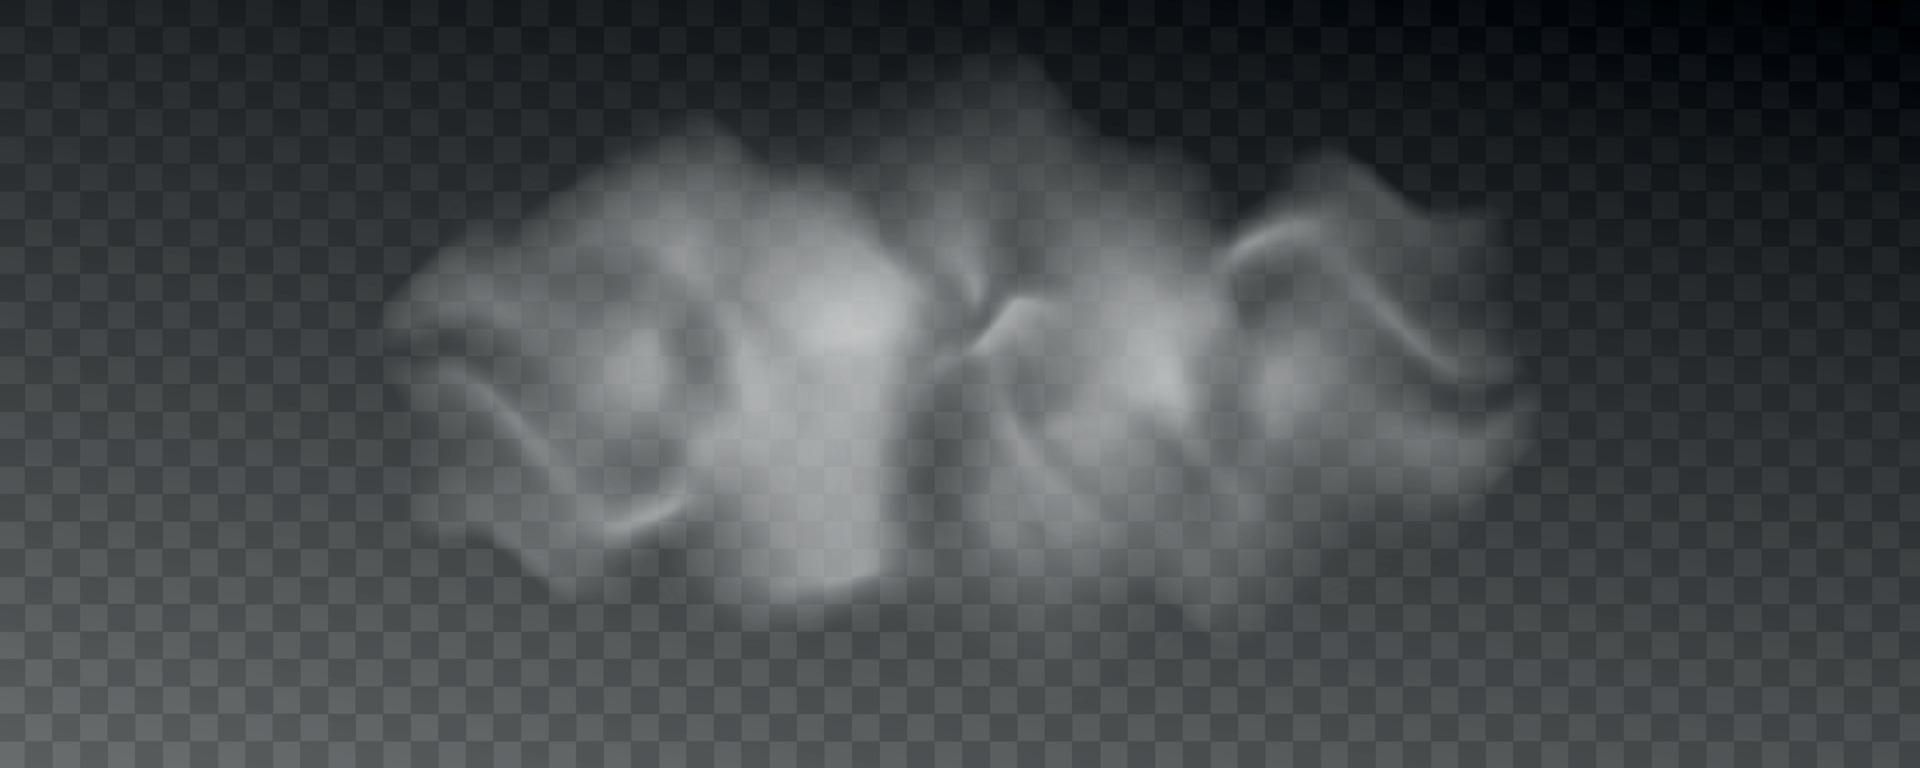 abstrakt realistisk dimma, moln eller rök vektor